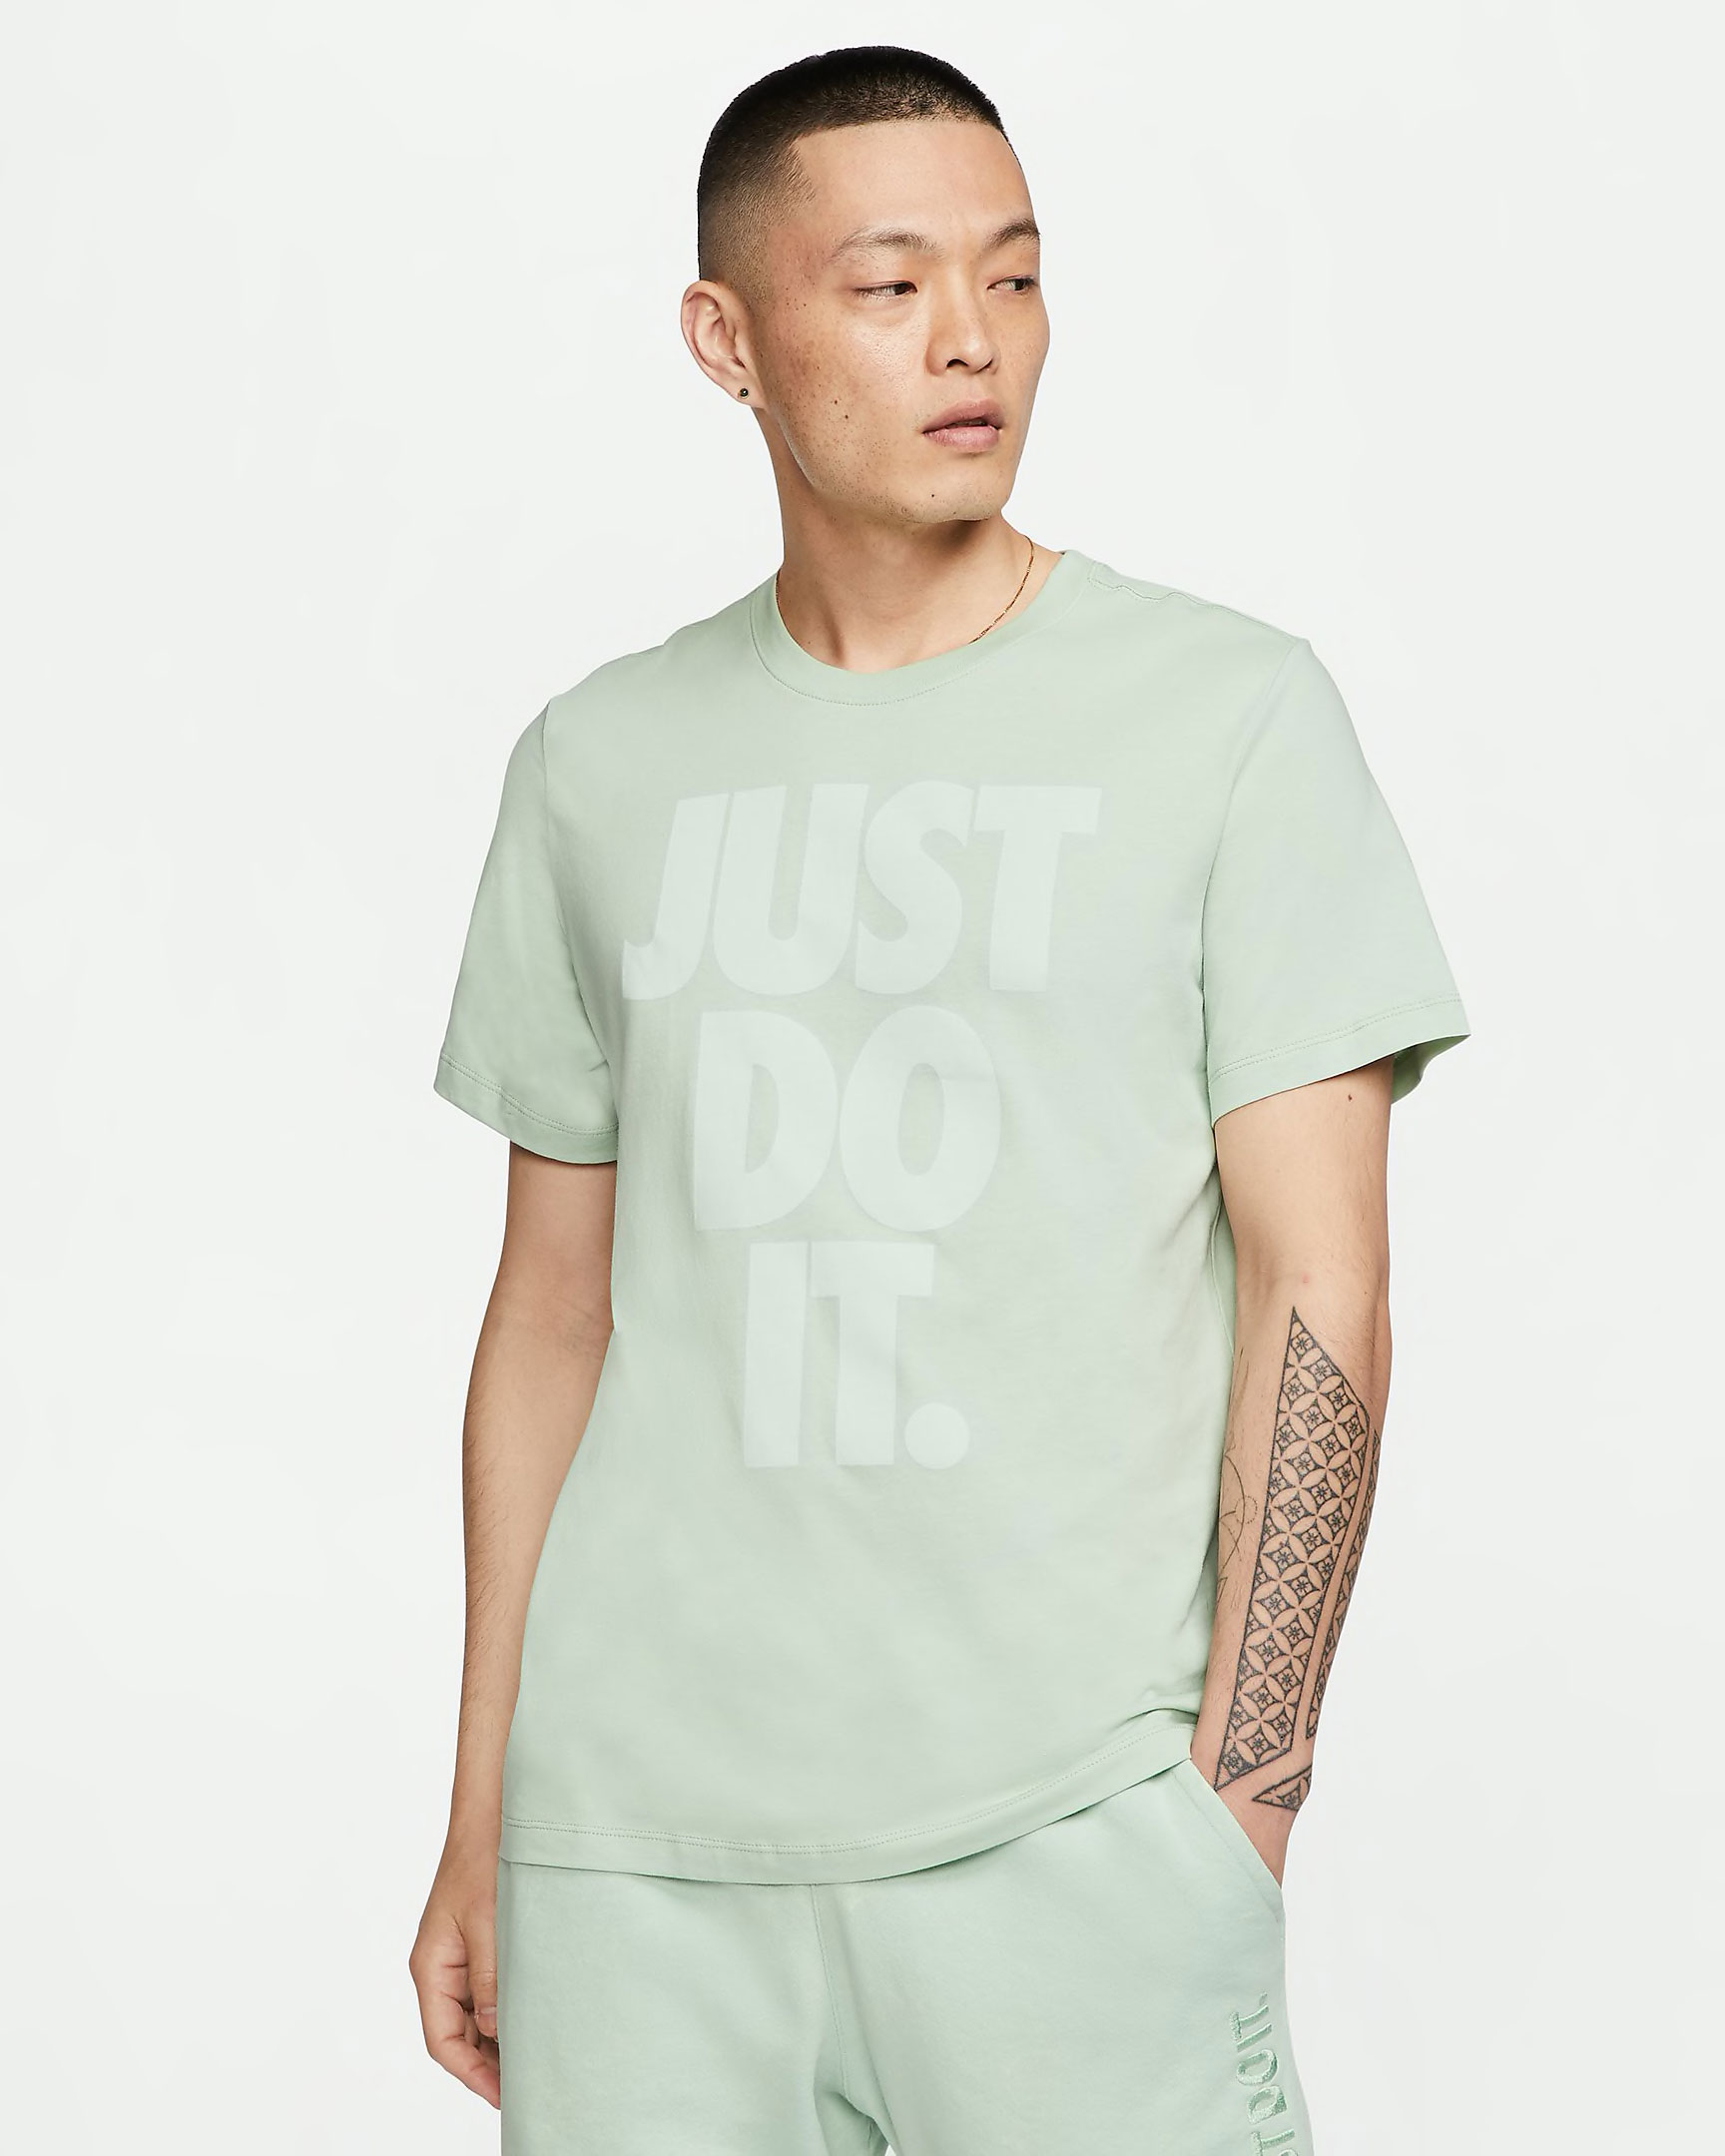 nike-sportswear-just-do-it-pistachio-frost-shirt